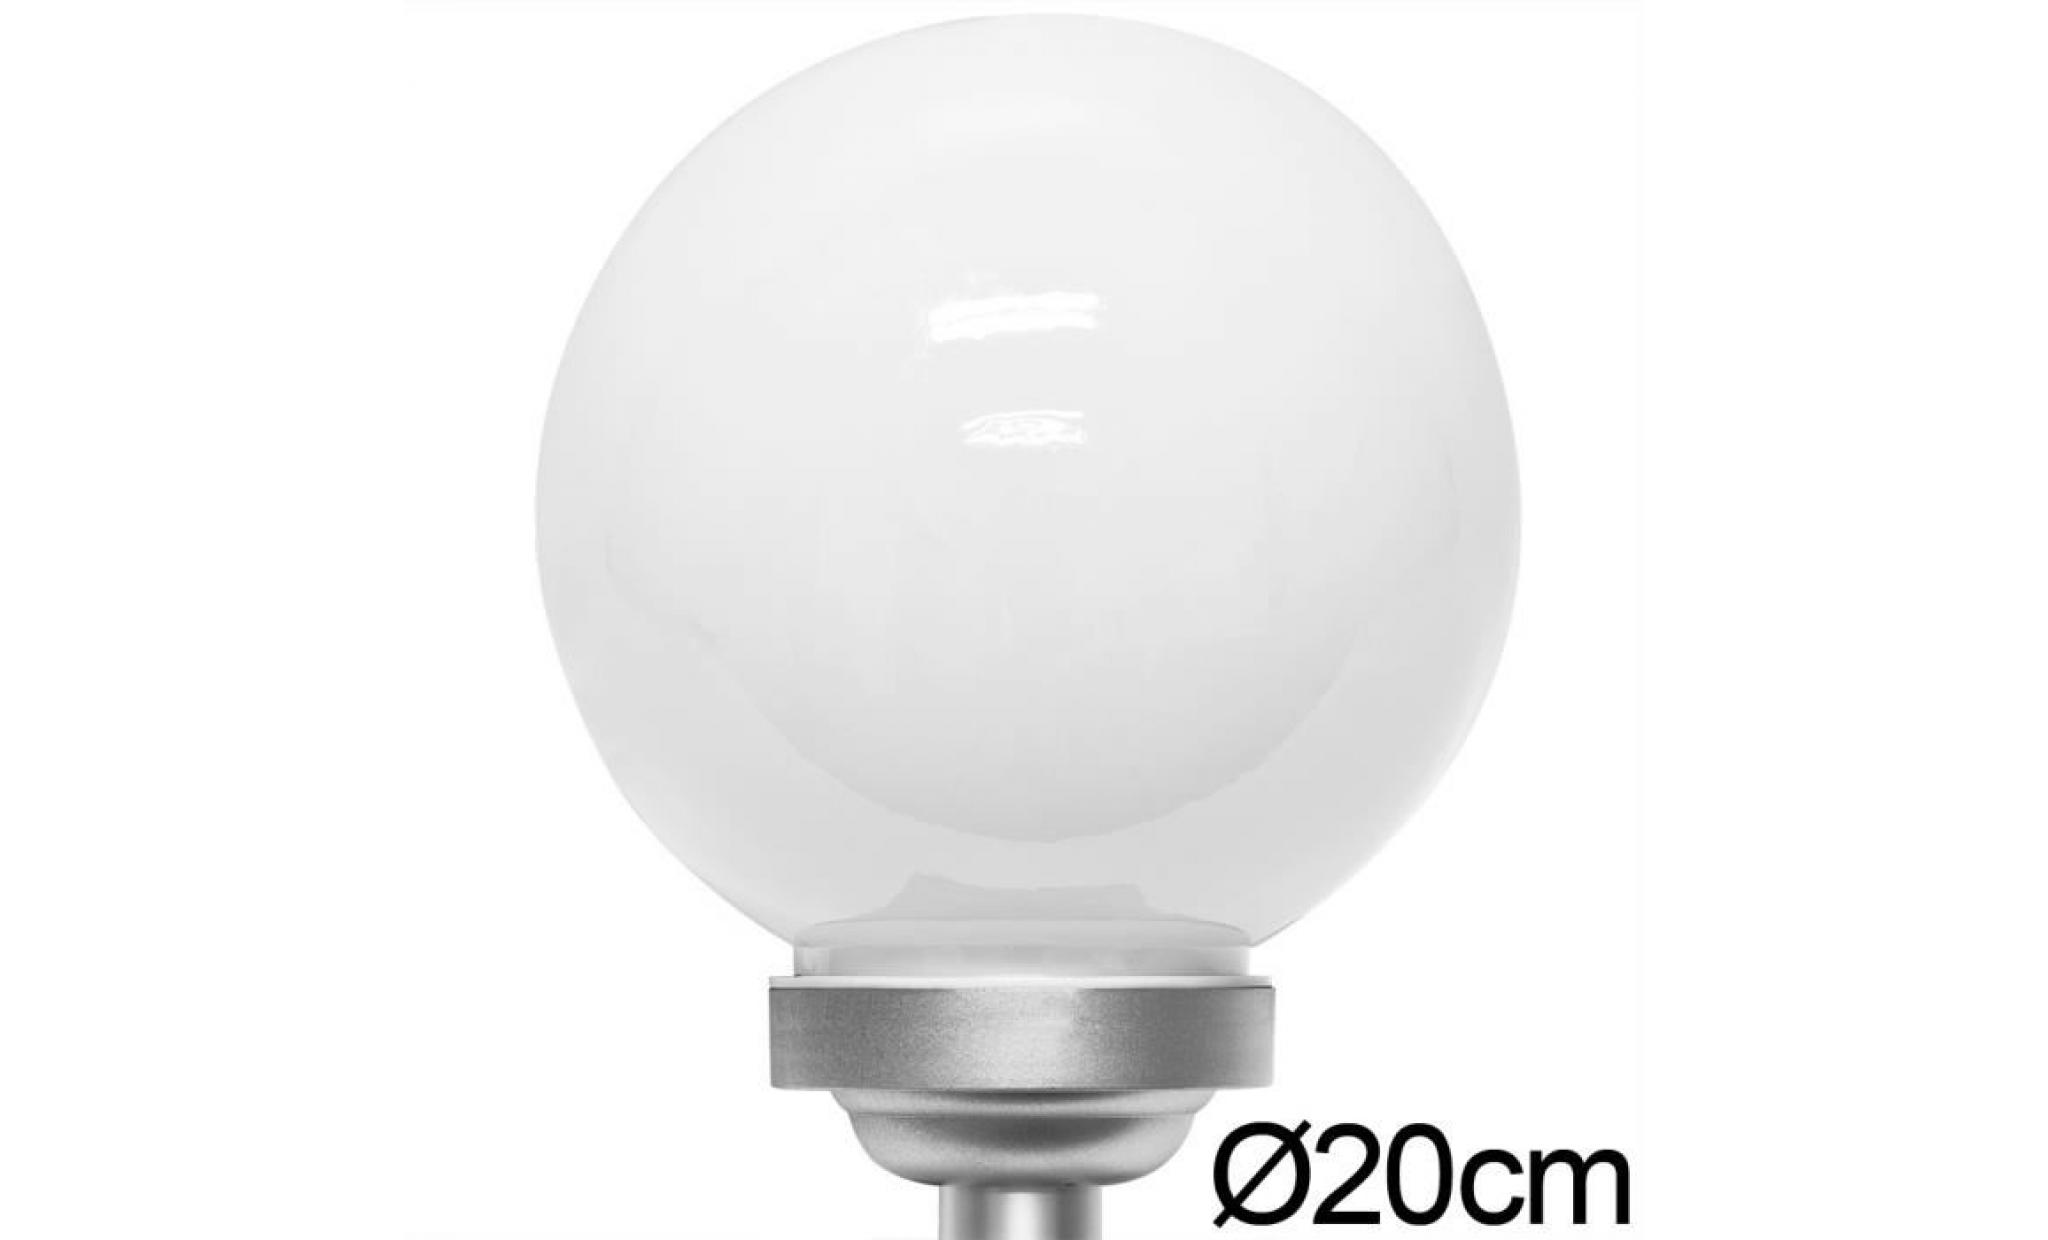 deuba | lampe solaire led • blanc opale • Ø 20cm | ecologique, économique, extérieur, boule, sphère lumineuse